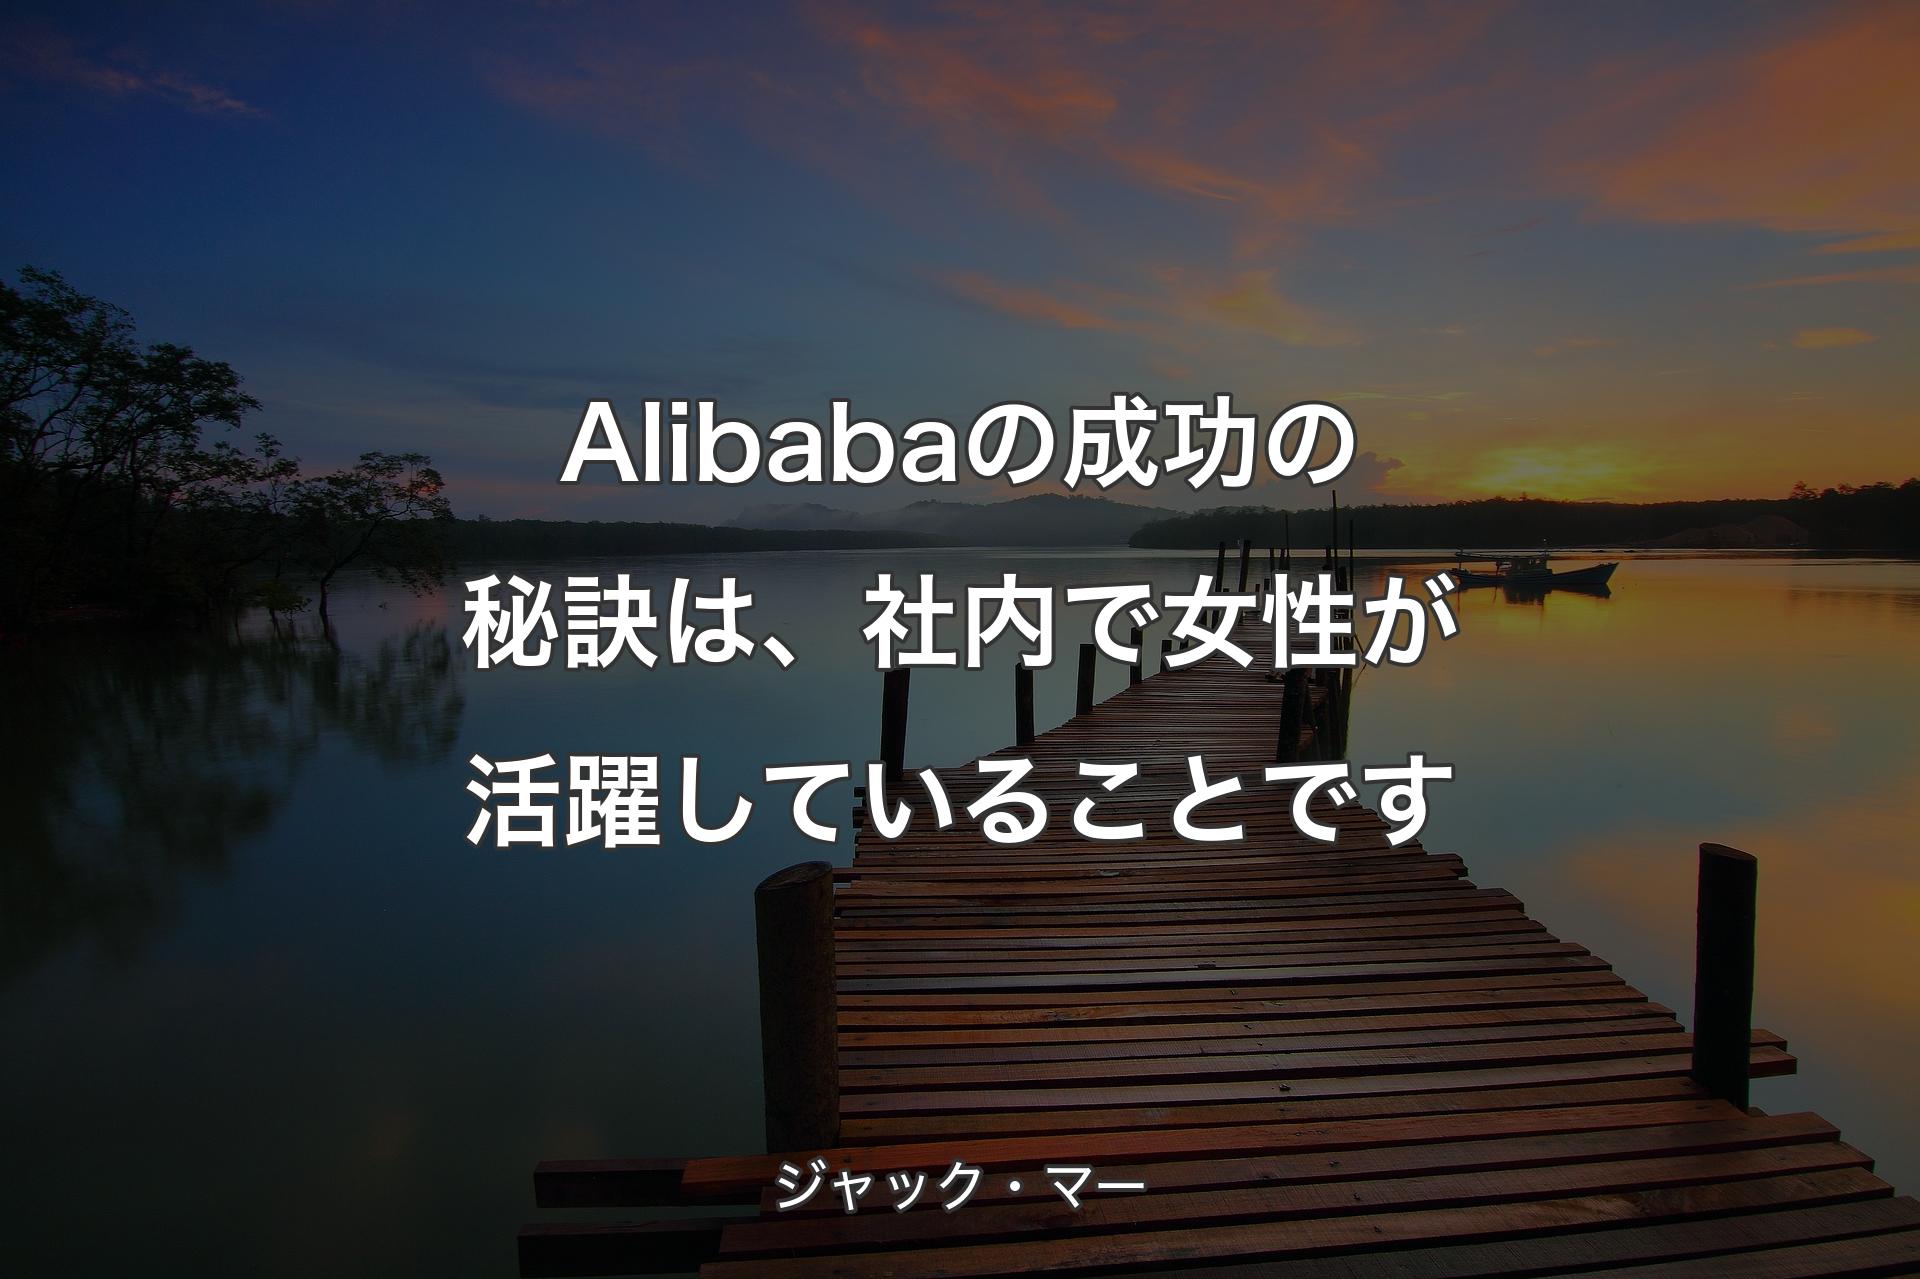 Alibabaの成功の秘訣は、社内で女性が活躍していることです - ジャック・マー